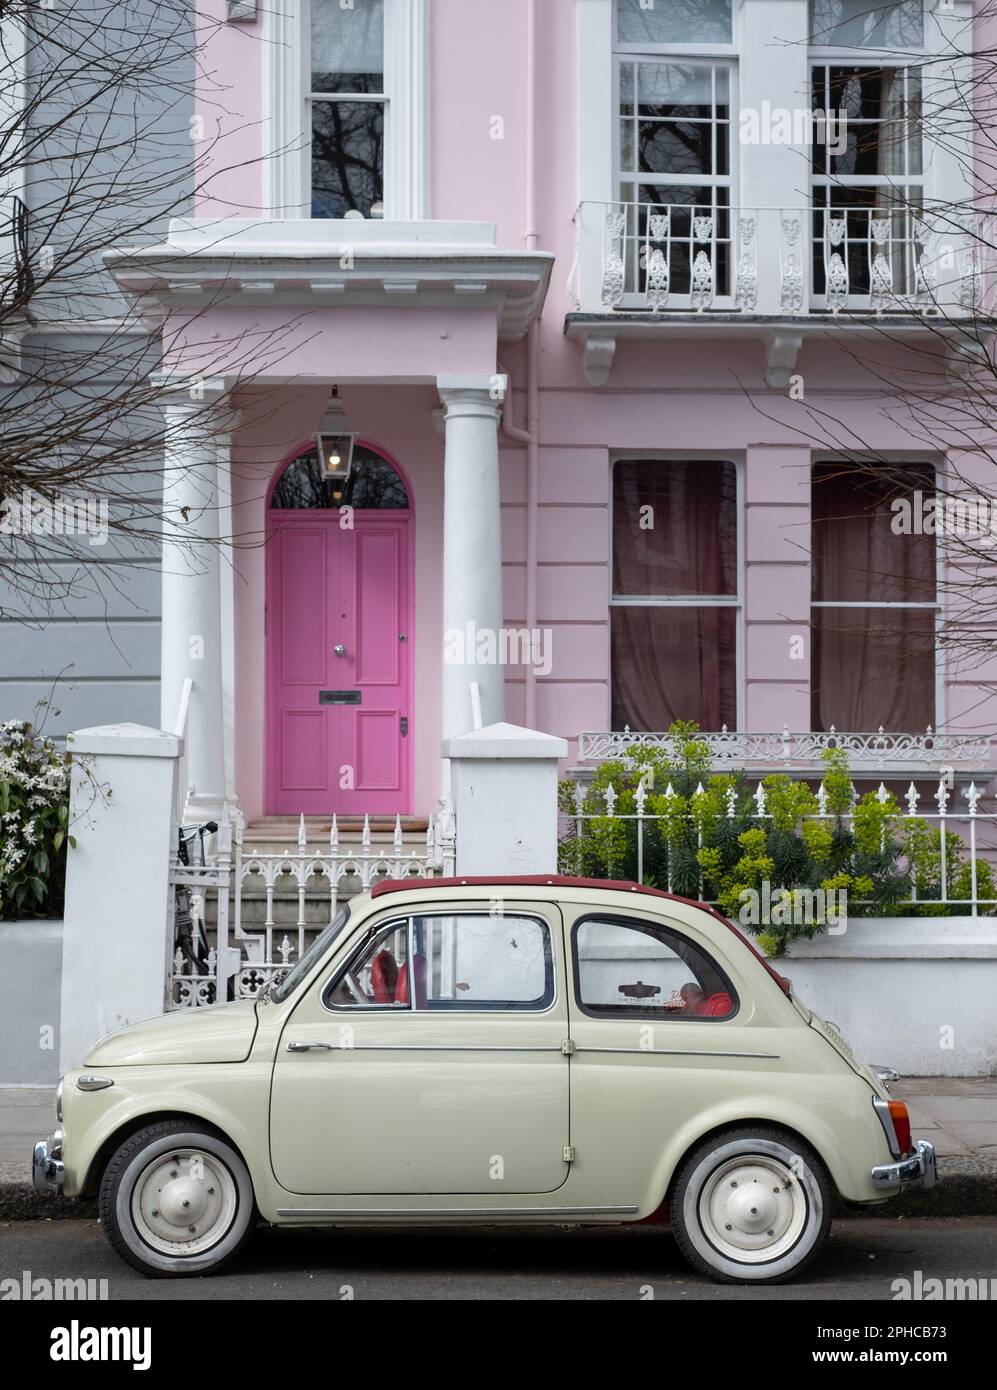 Jolie voiture classique Fiat 500 beige couleur vintage garée en face d'une maison avec une porte rose sur une rue résidentielle de Notting Hill, ouest de Londres Royaume-Uni. Banque D'Images